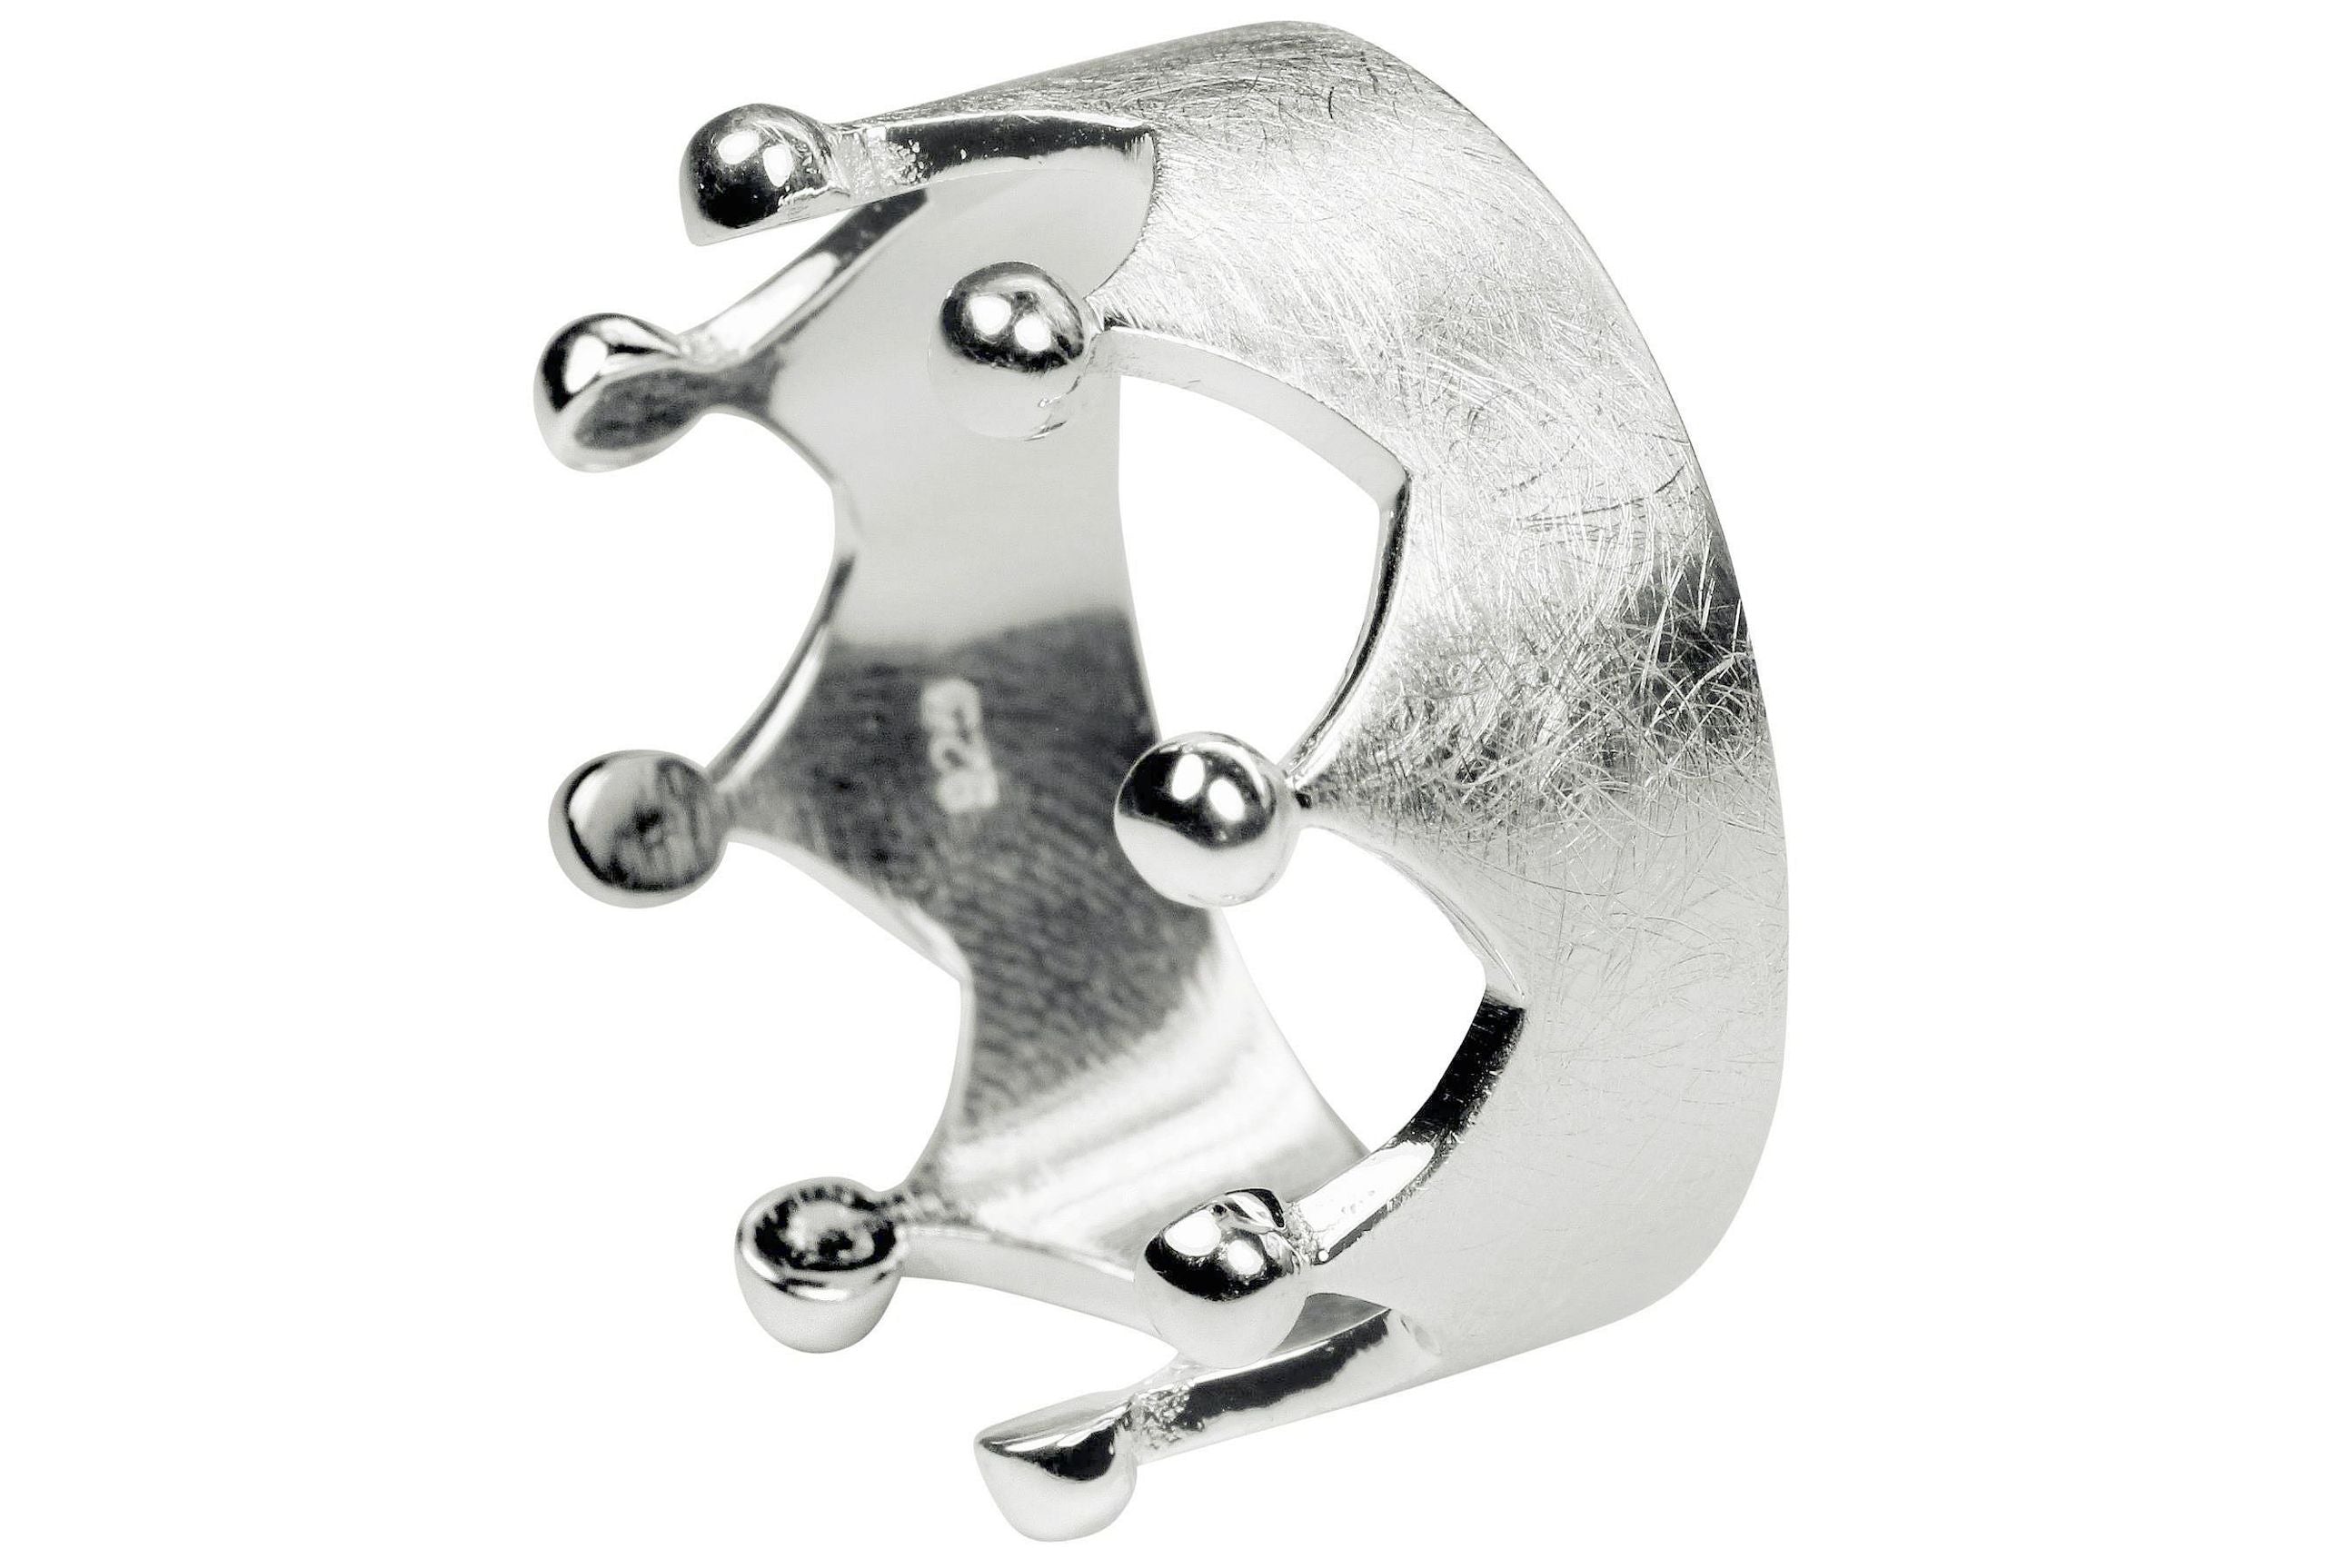 Silberner Ring im Kronendesign mit acht Zacken in den Größen 64 bis 70. Der Ring ist innen glänzend und außen gebürstet. 